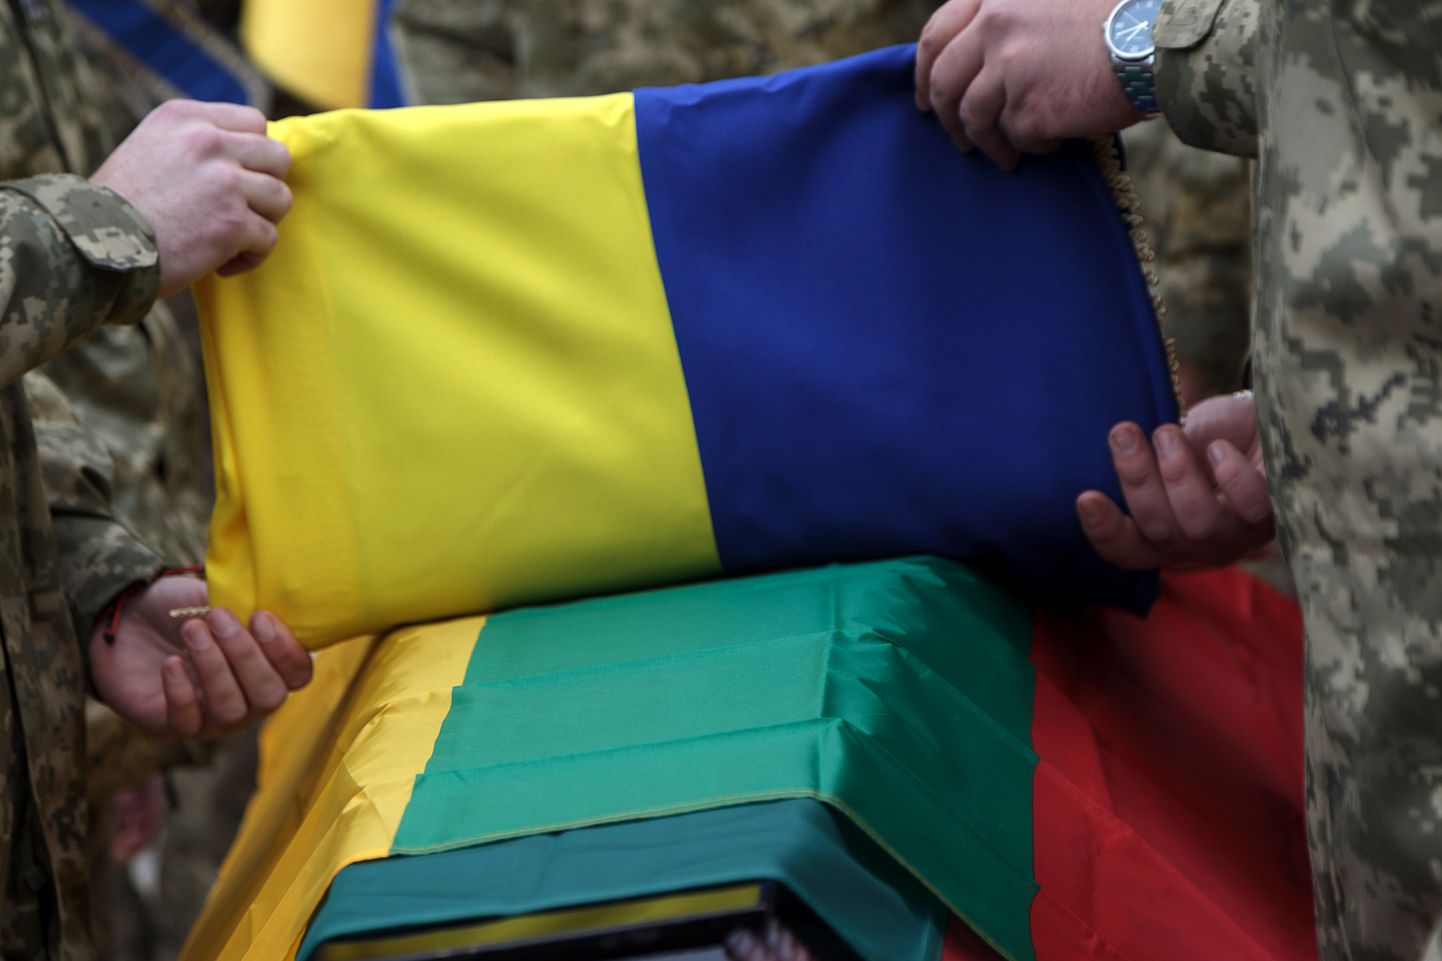 Leedu püsib Ukraina selja taga. Pilt on illustreeriv.